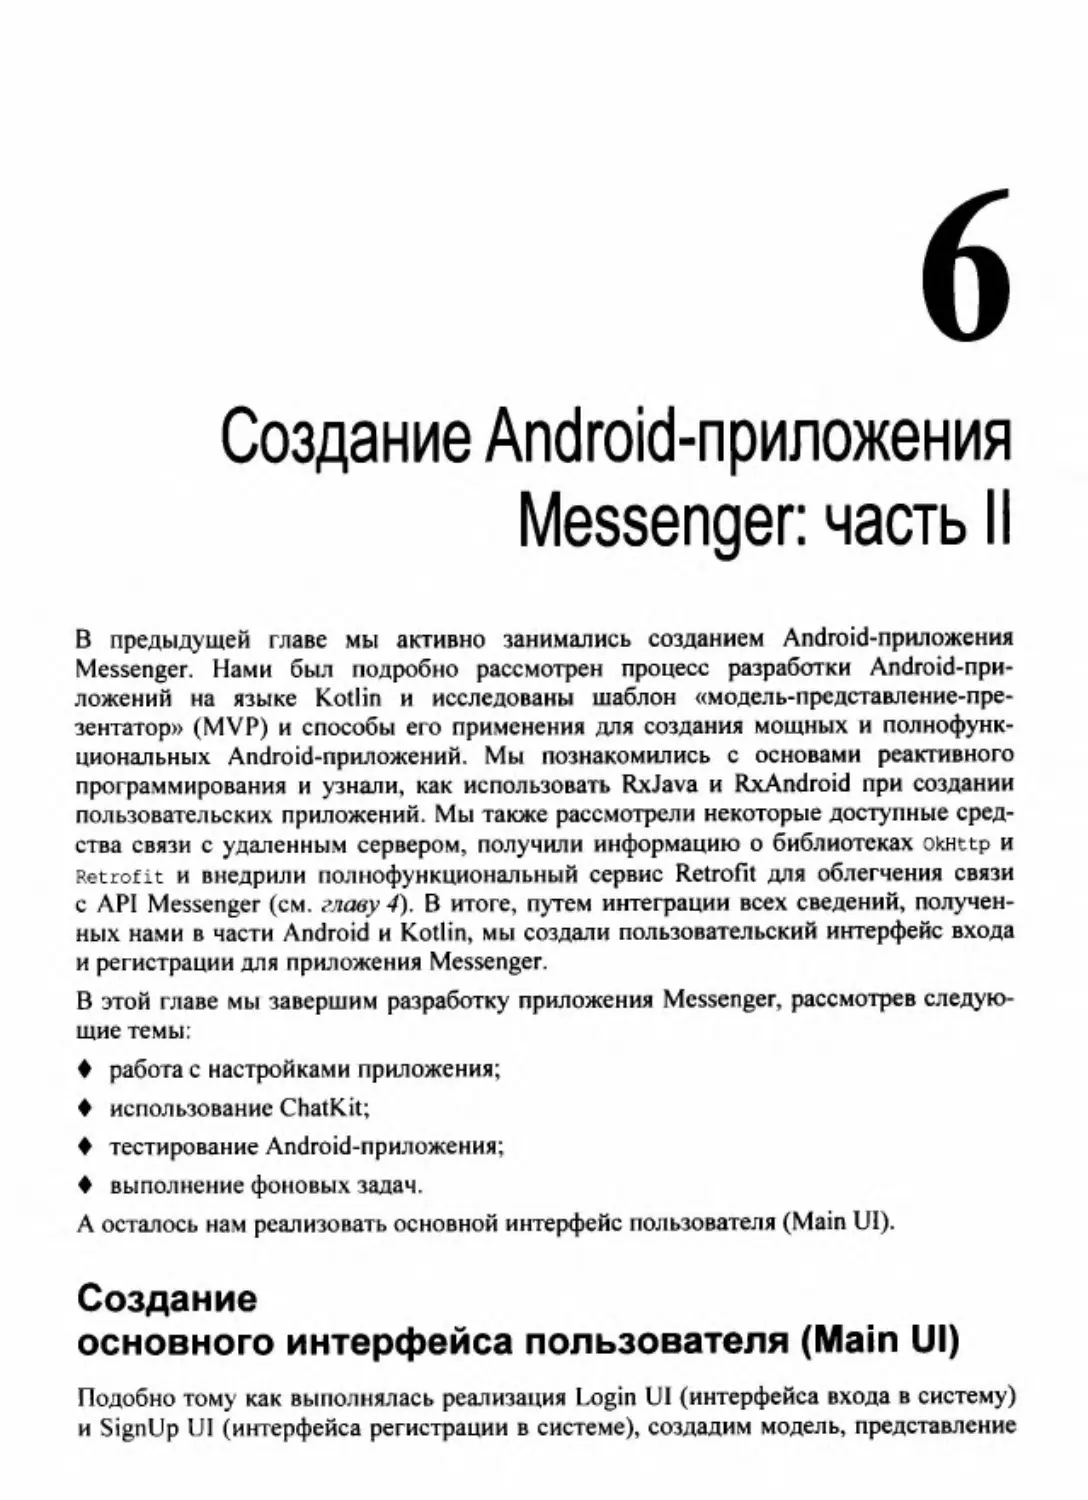 Глава 6. Создание Android-приложения Messenger: часть 2